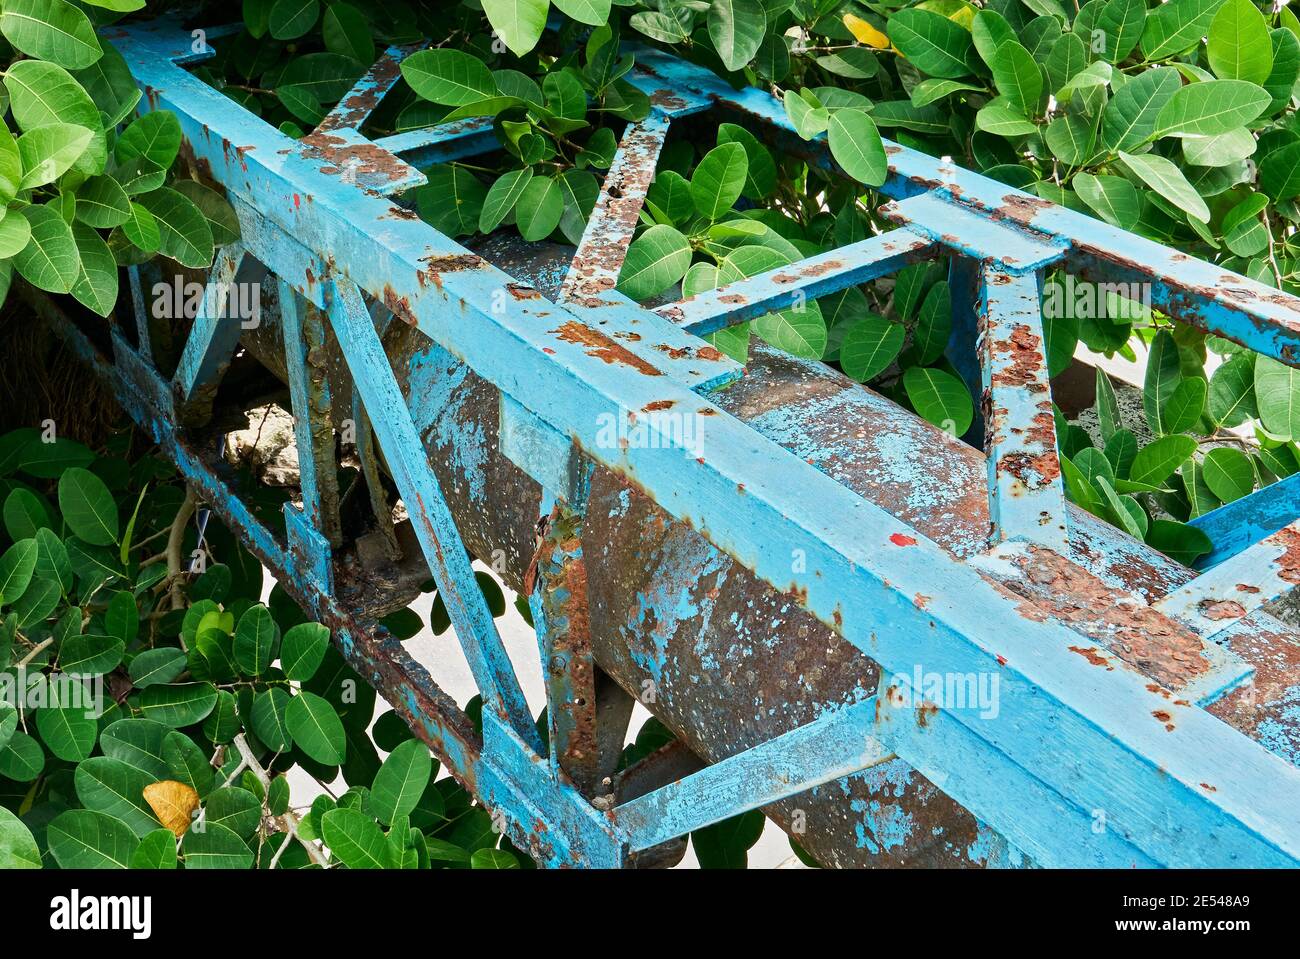 Rostige, bunt lackierte Stahlrohrleitung in der Abwasserentsorgung von Grünanlagen umgeben verwendet Stockfoto